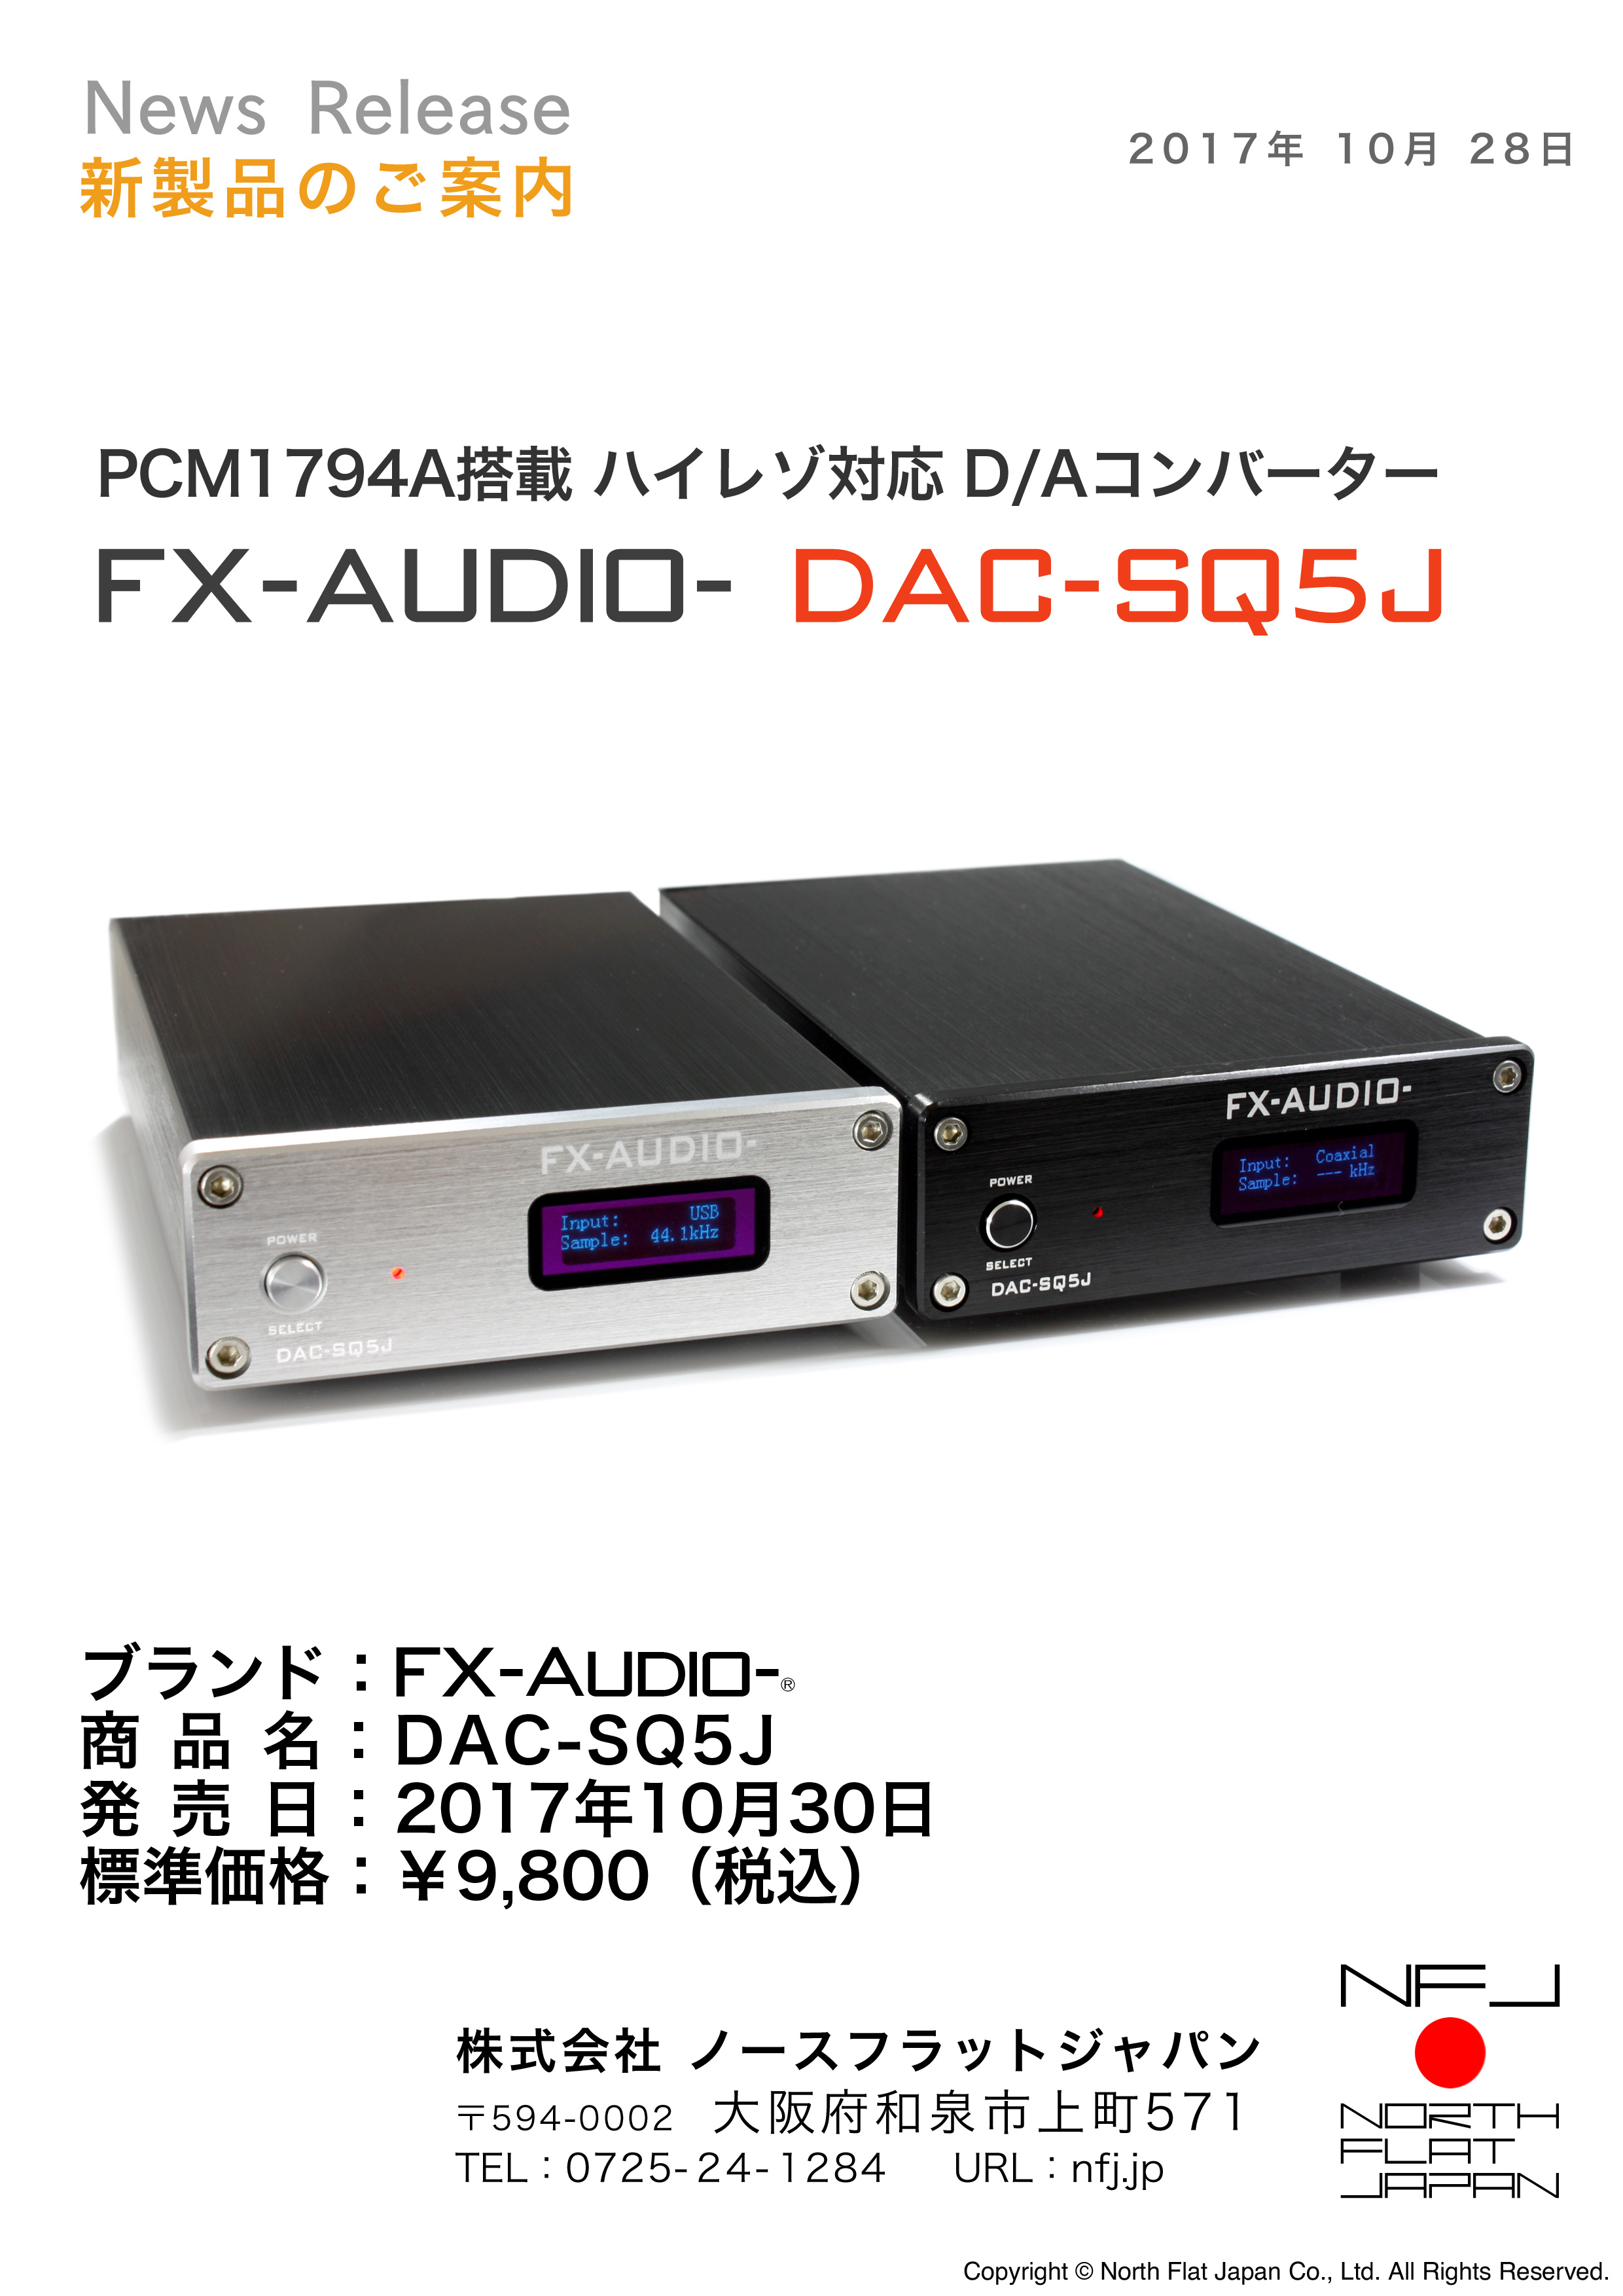 PCM1794A搭載 ハイレゾDAC FX-AUDIO-『DAC-SQ5J』を新発売 | 新製品の 